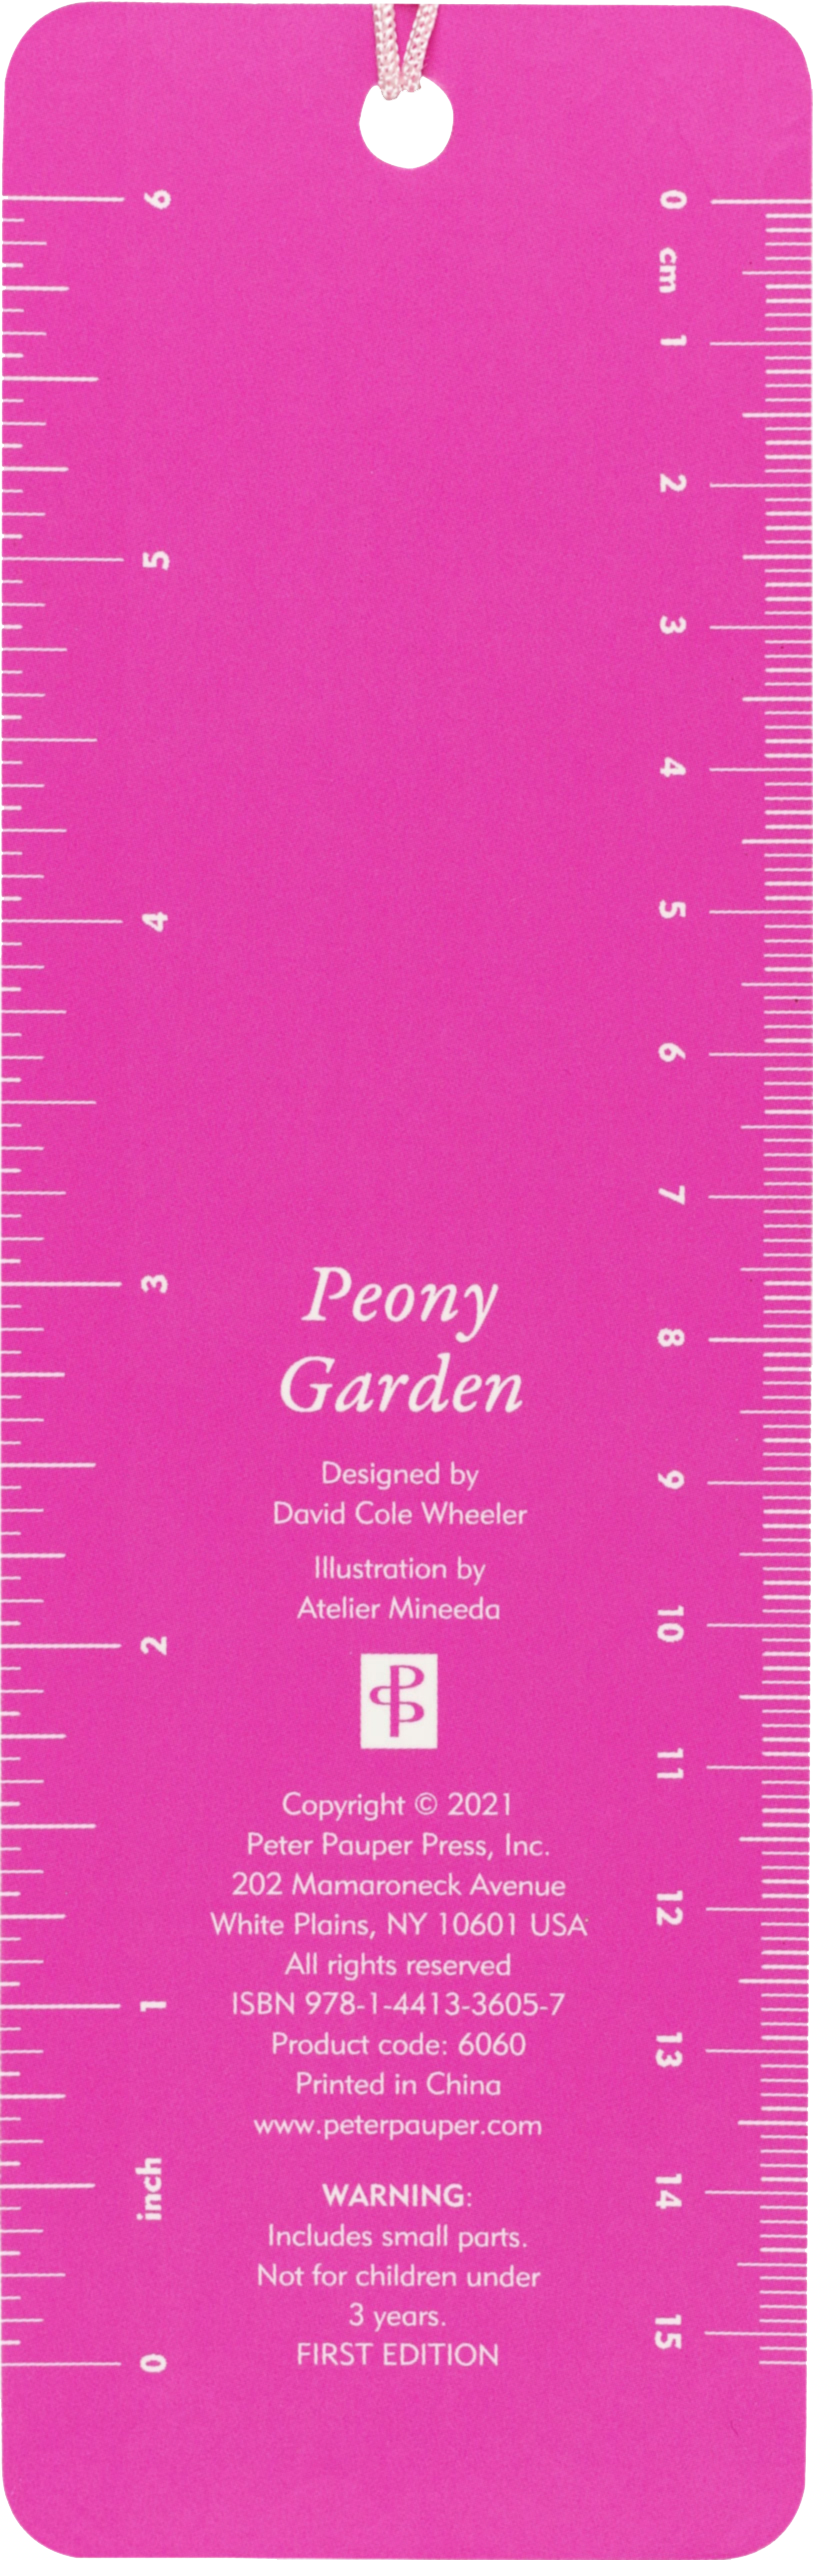 Peter Pauper Press - Peony Garden Beaded Bookmark